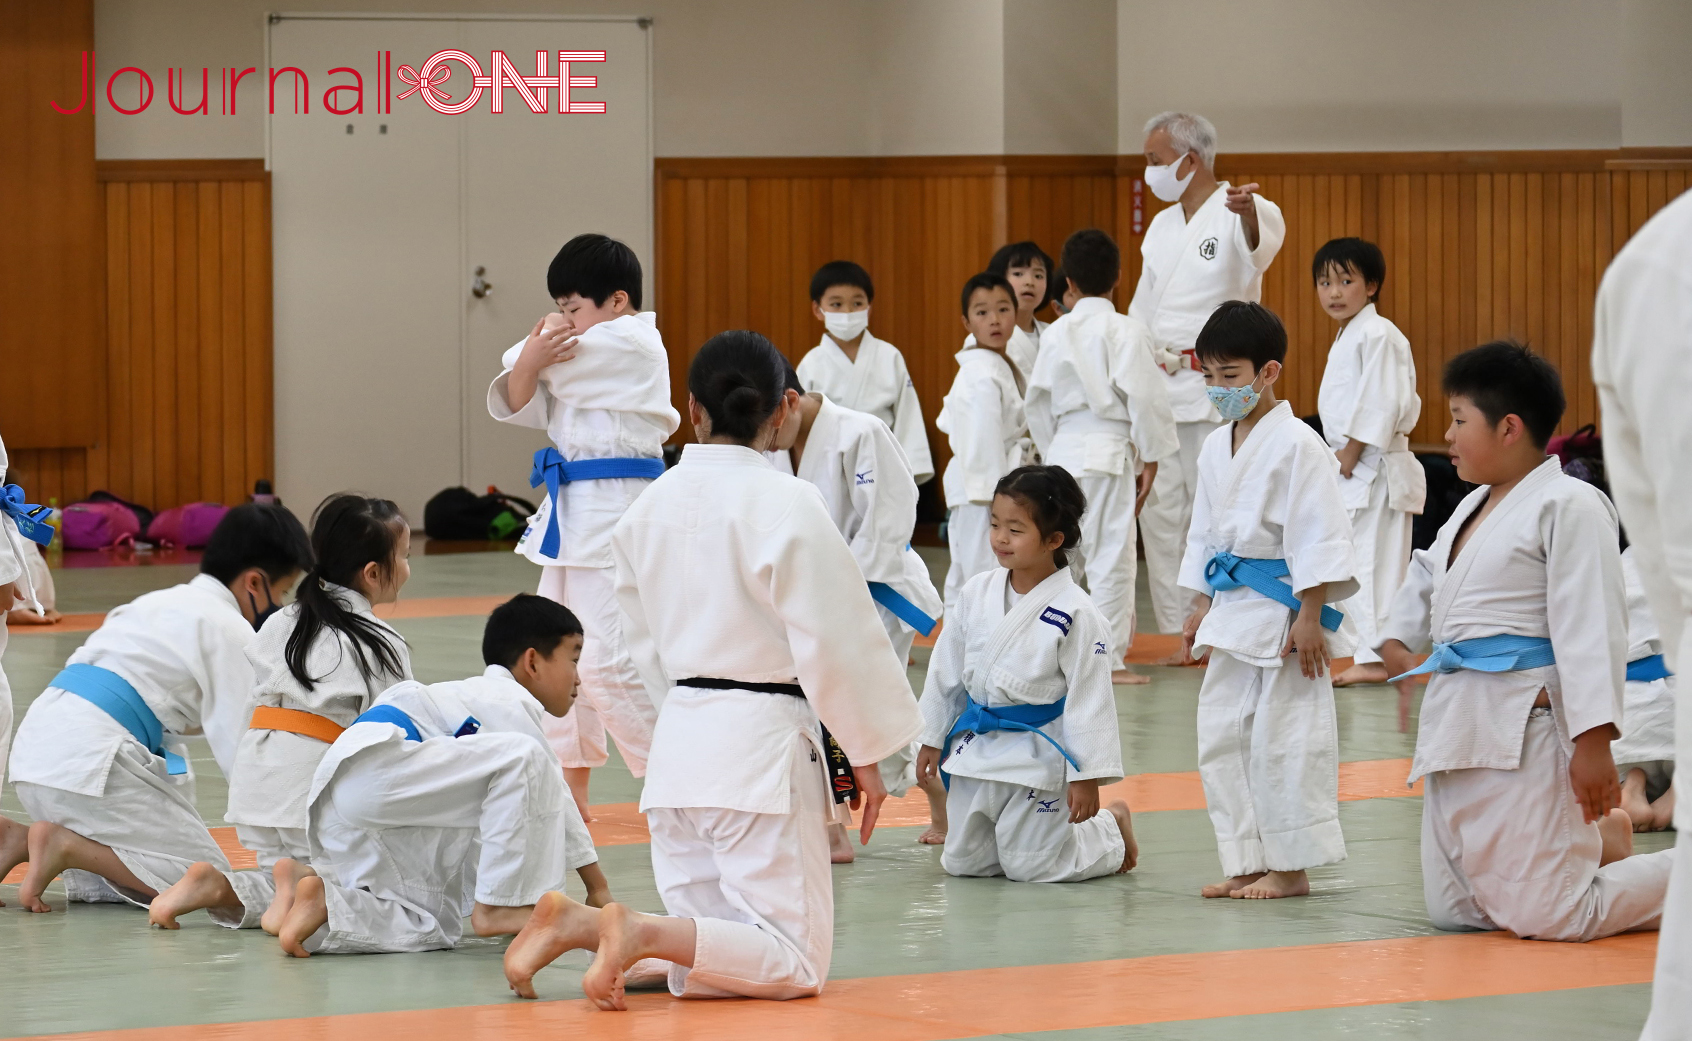 柔道の総本山・講道館内で学ぶ講道館少年部の子ども達-Journal-ONE撮影